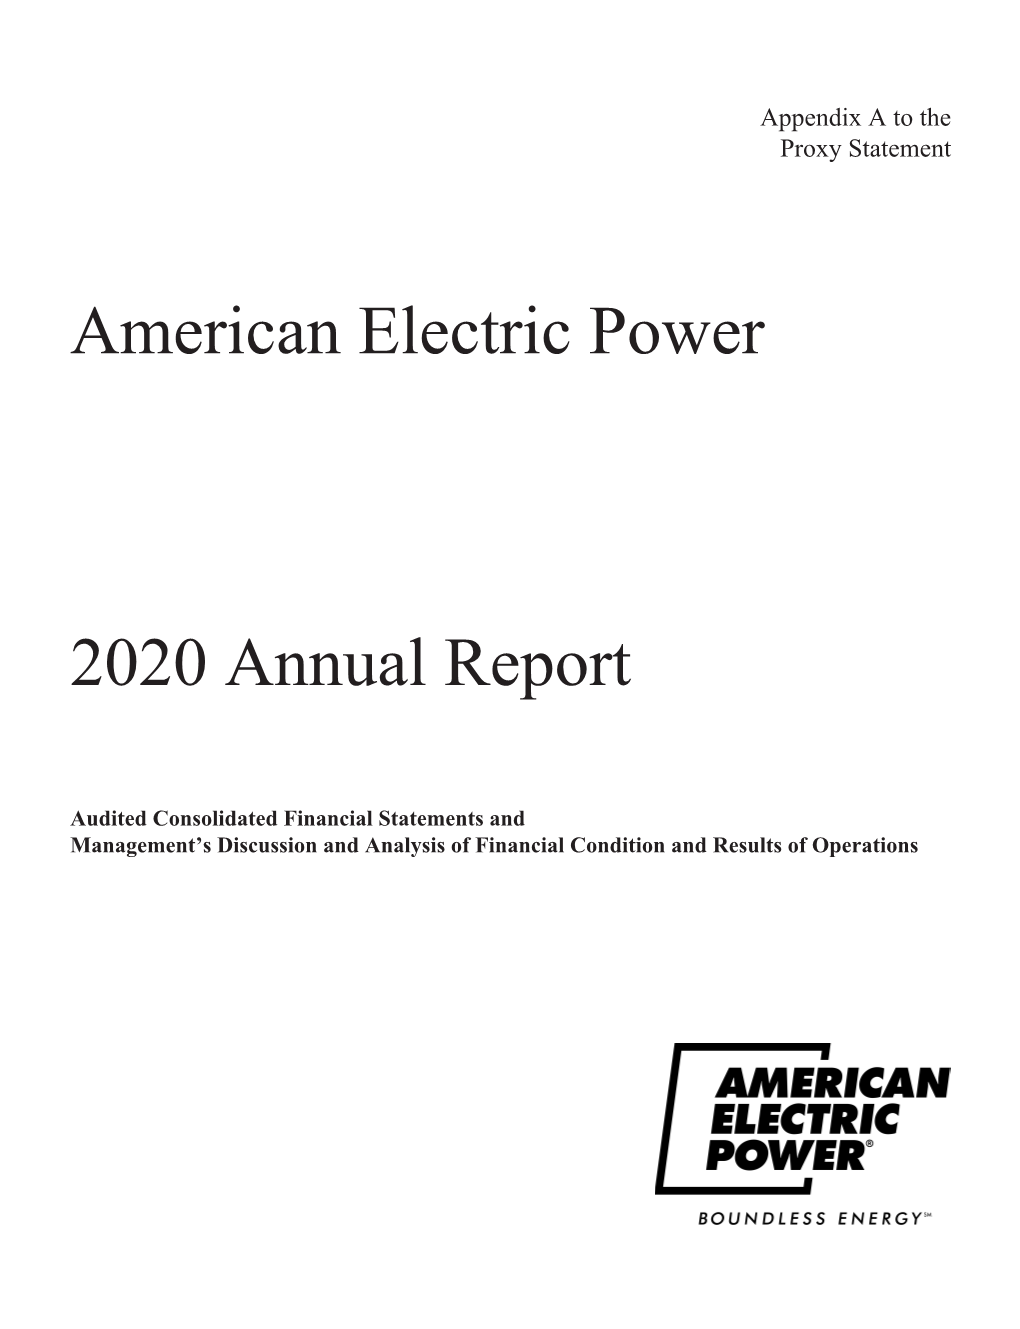 2020 Annual Report/Appendix A